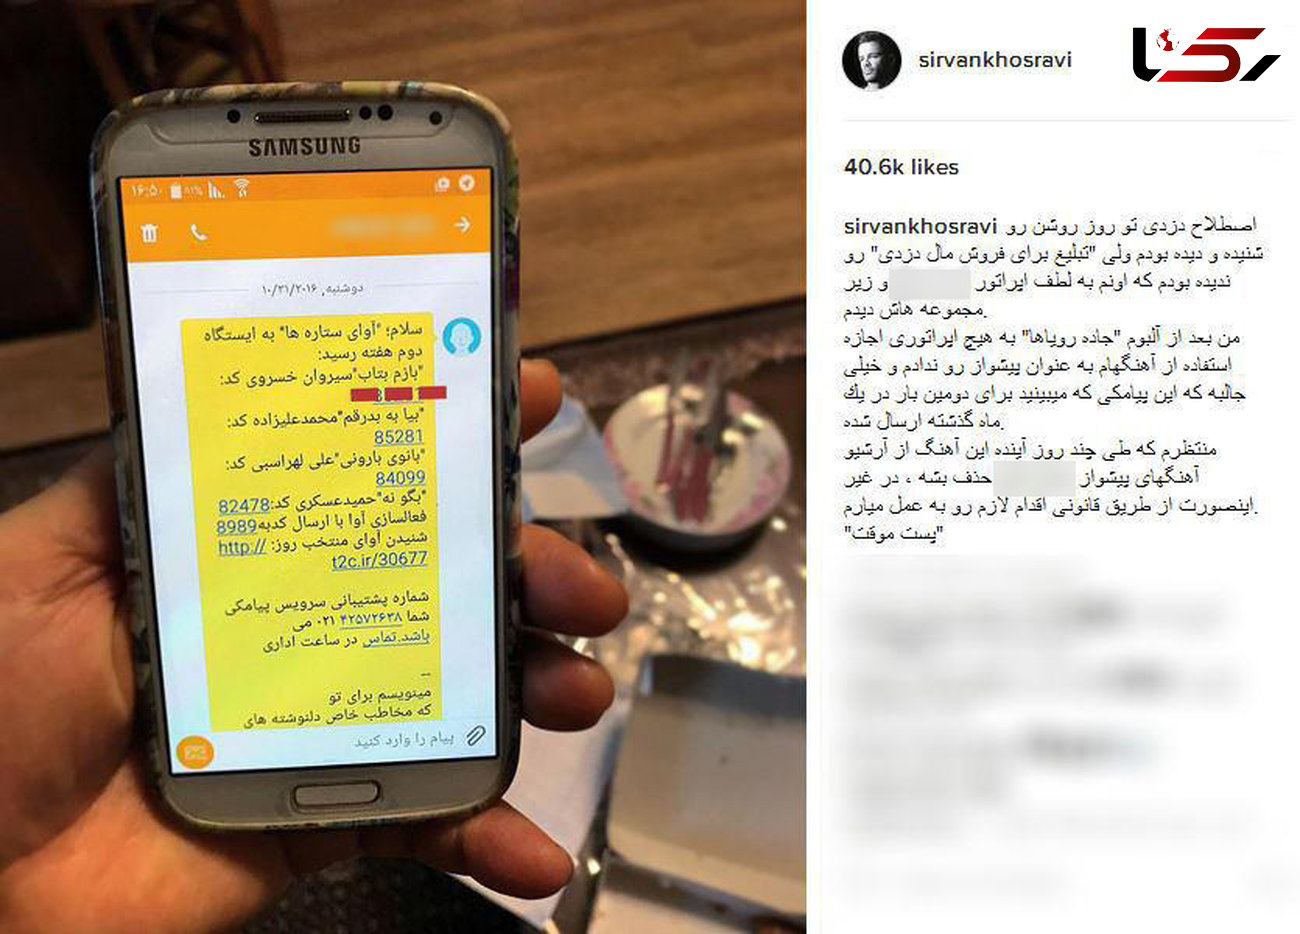 سیروان خسروی اپراتور تلفن همراه را به شکایت تهدید کرد +عکس